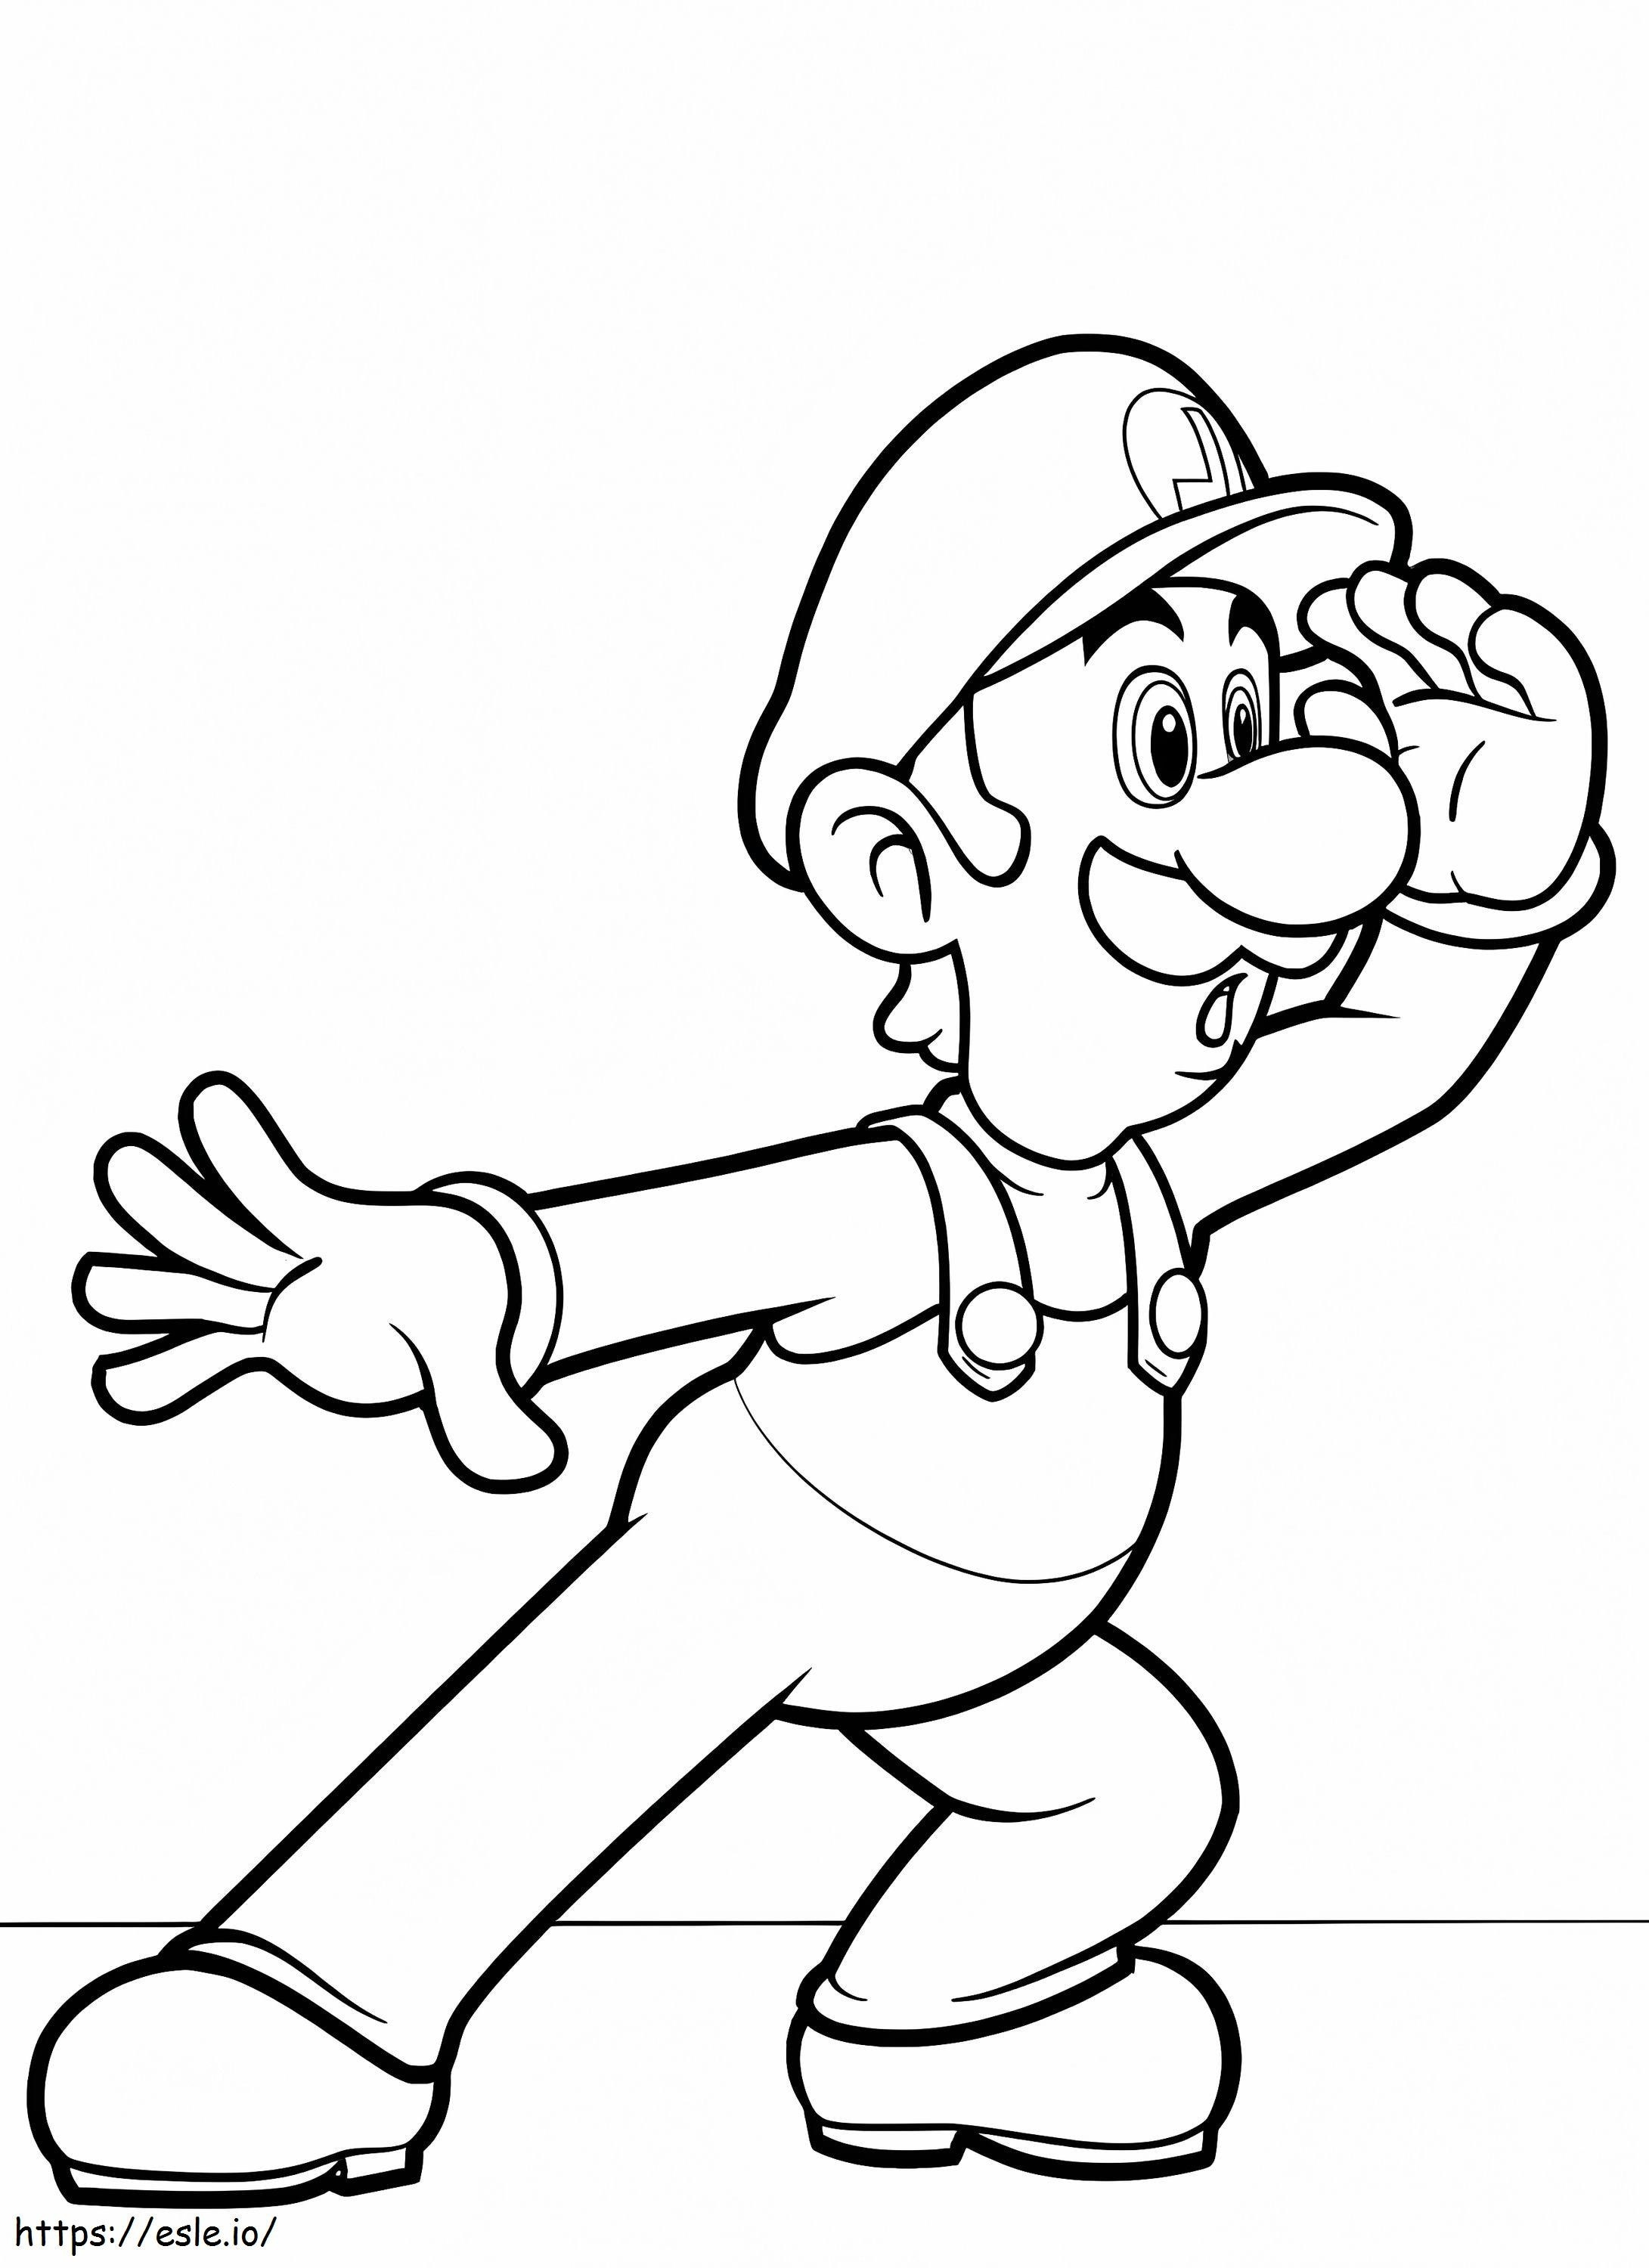 Mario Bros. Luigi coloring page